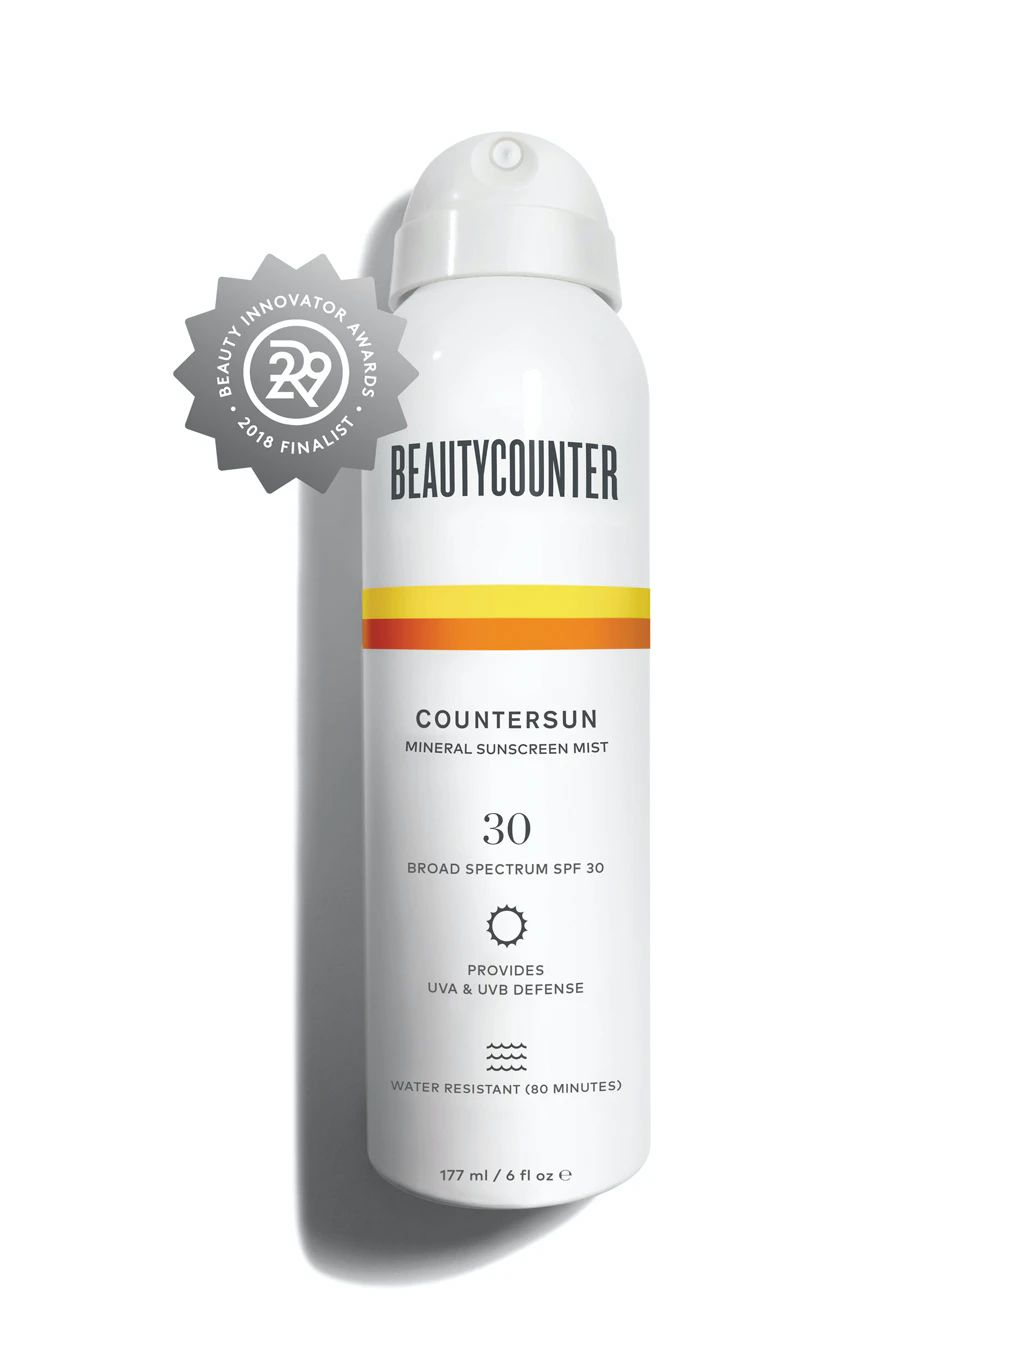 Countersun Mineral Sunscreen Mist SPF 30 – 6 oz. | Beautycounter.com